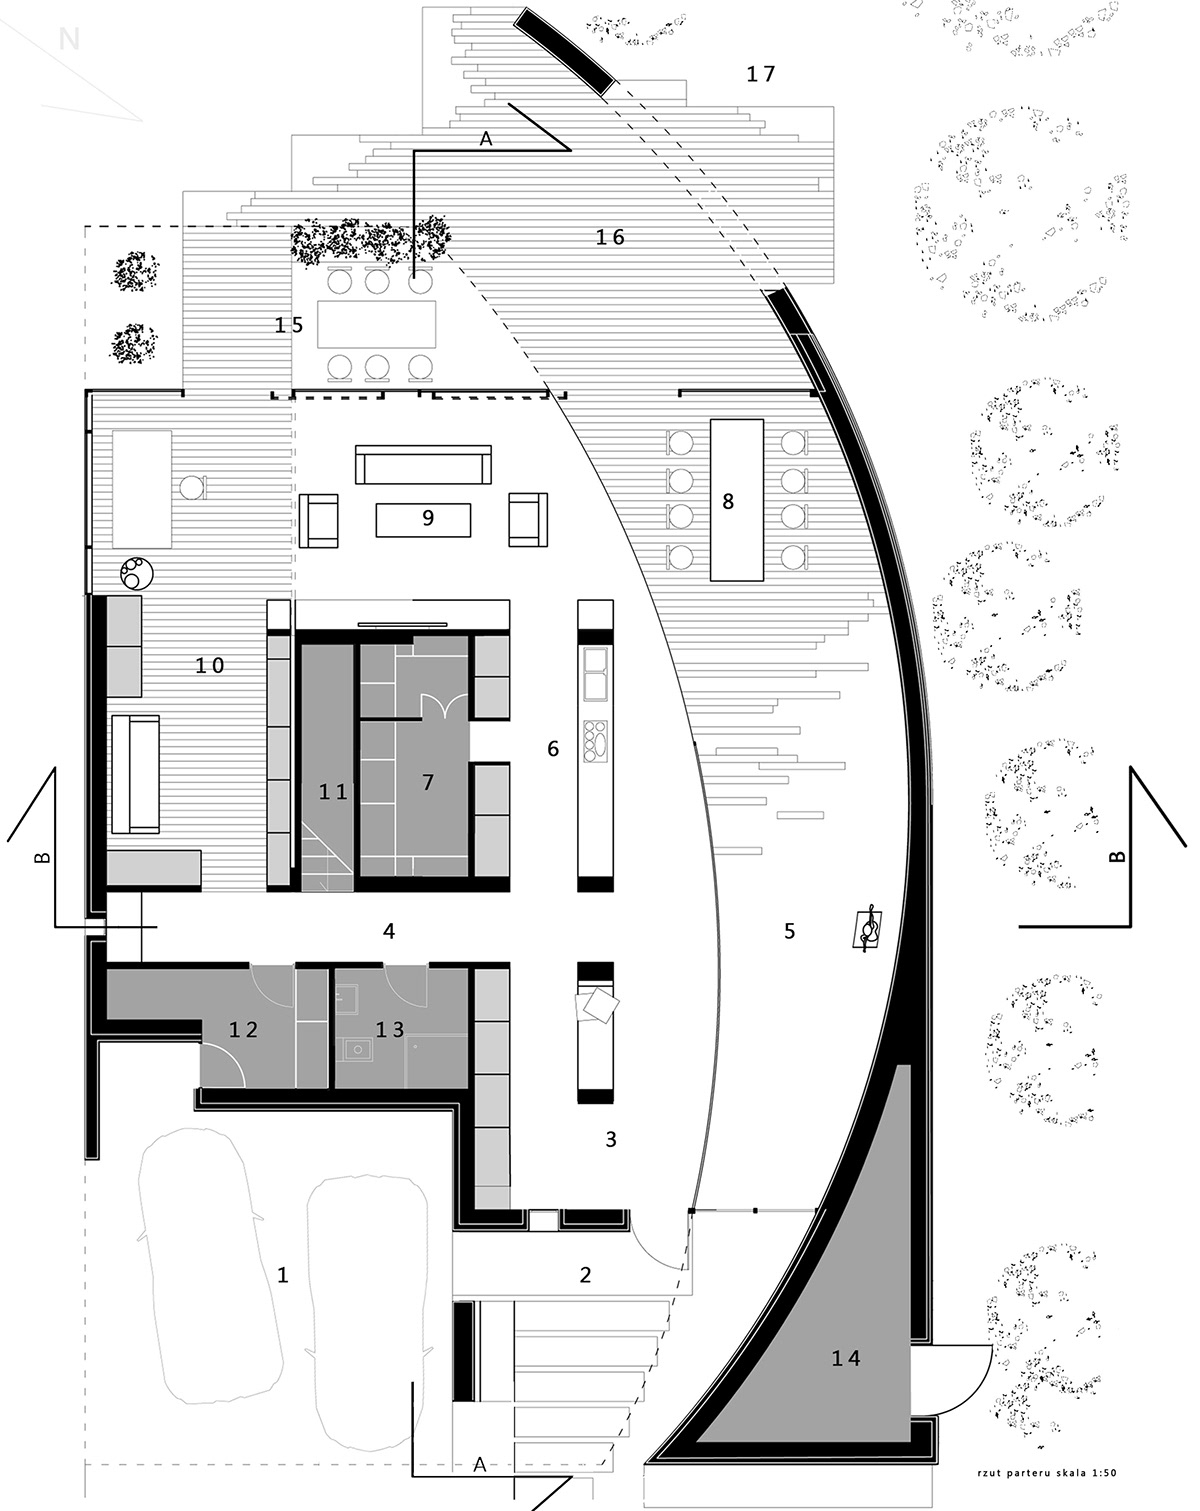 architecture   house   szypkidesign.   szyp